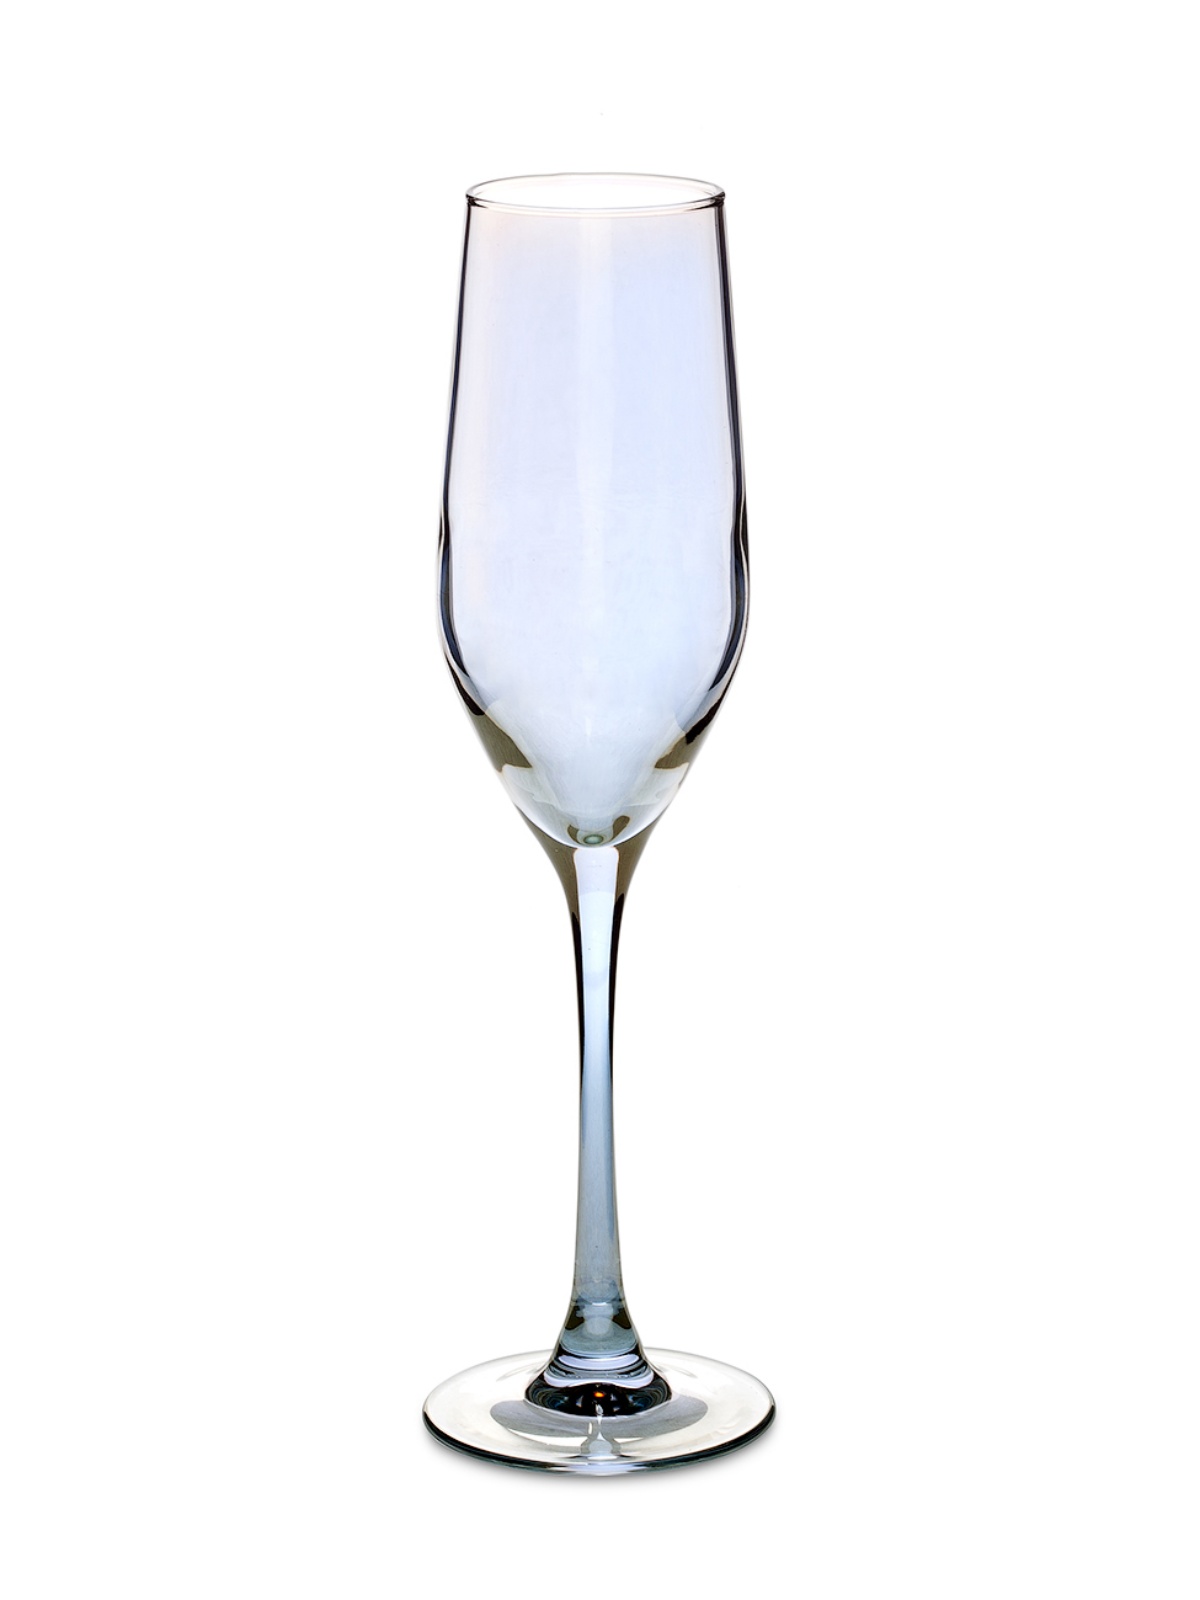 Набор бокалов для шампанского СЕЛЕСТ ЗОЛОТИСТЫЙ ХАМЕЛЕОН 6шт 160мл LUMINARC P1636 набор бокалов luminarc селест 6шт 160мл шампань стекло